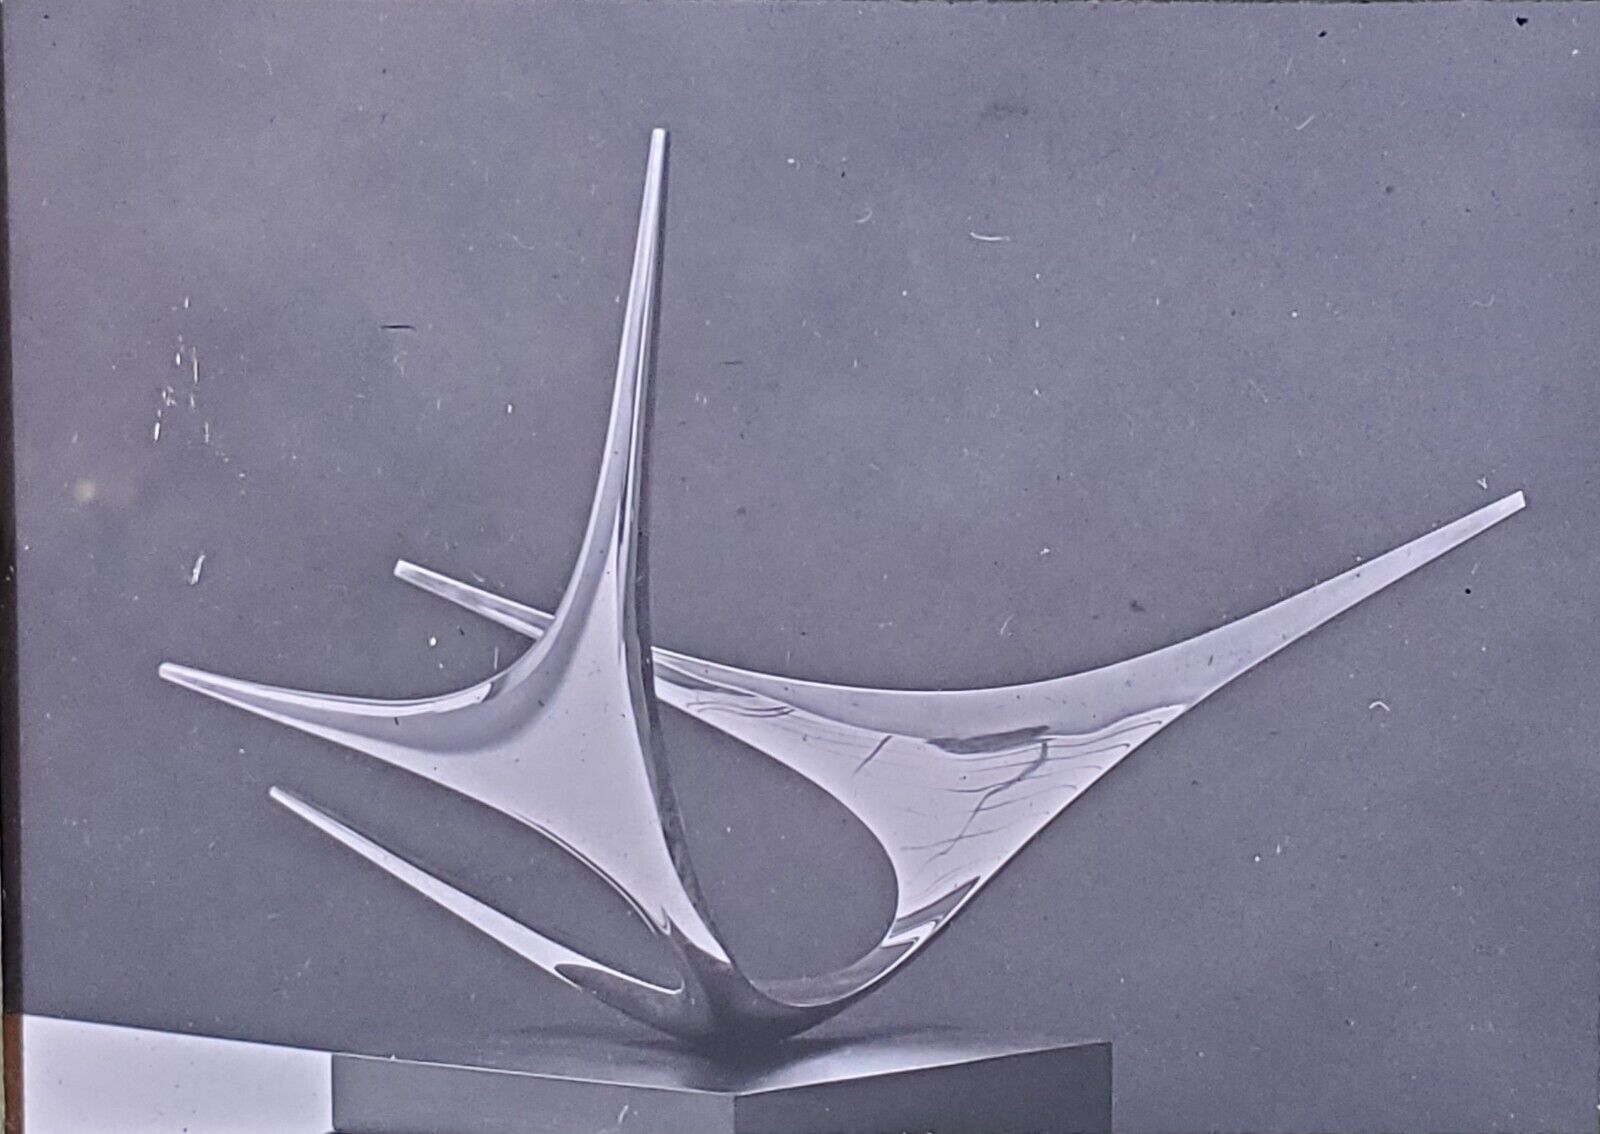 Construction No. 6, José Ruiz de Rivera, Magic Lantern Glass Slide